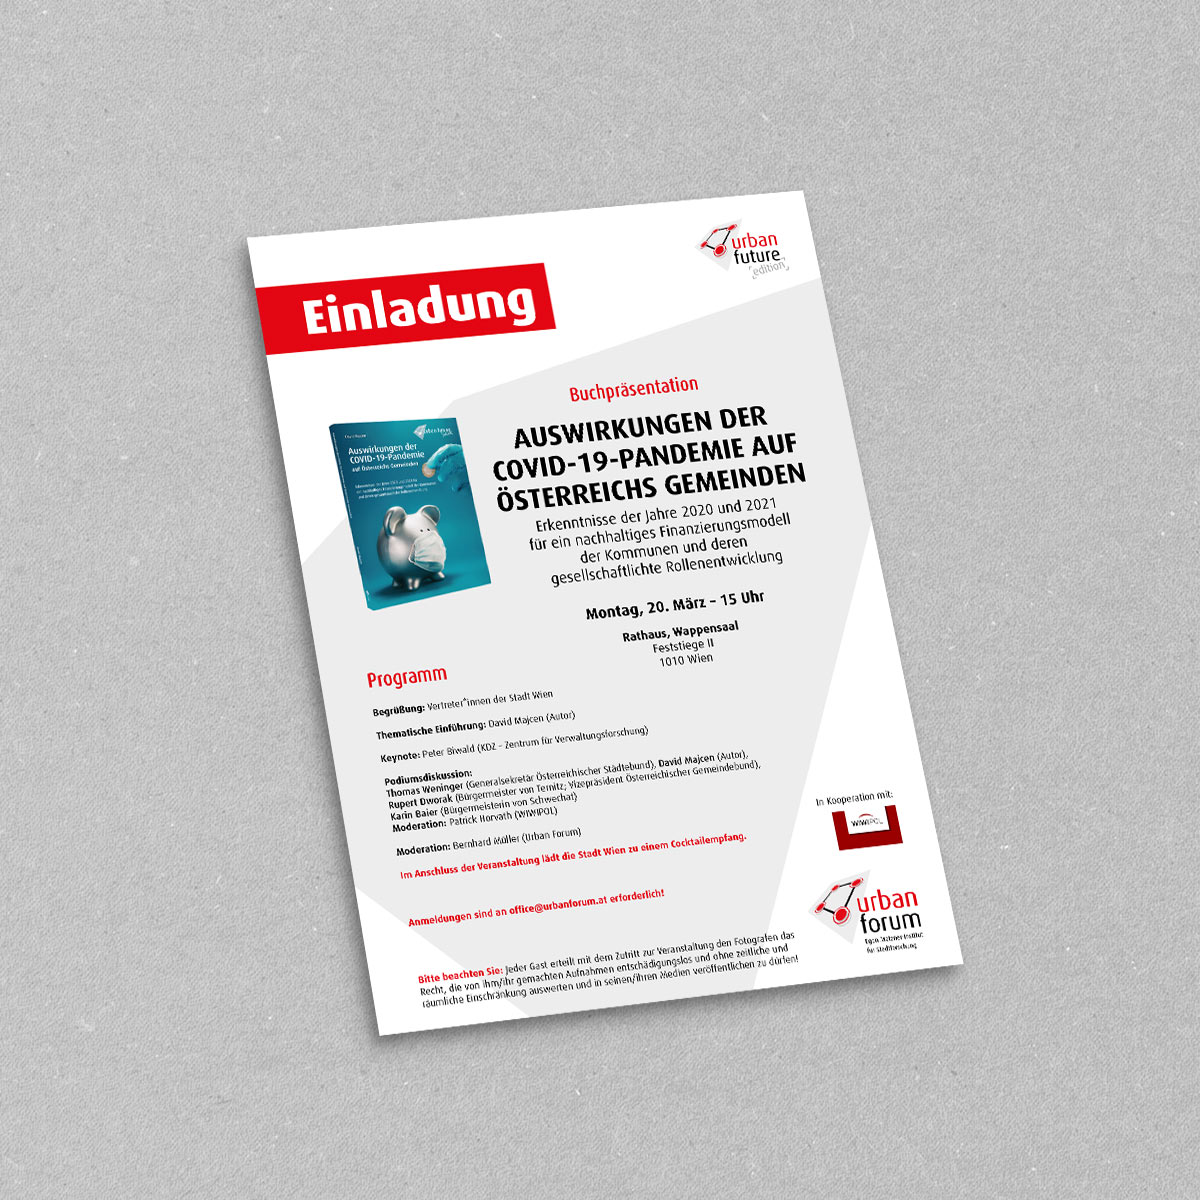 Urban Forum, Einladung Buchpräsentation: Auswirkungen der COVID-19-Pandemie auf Österreichs Gemeinden